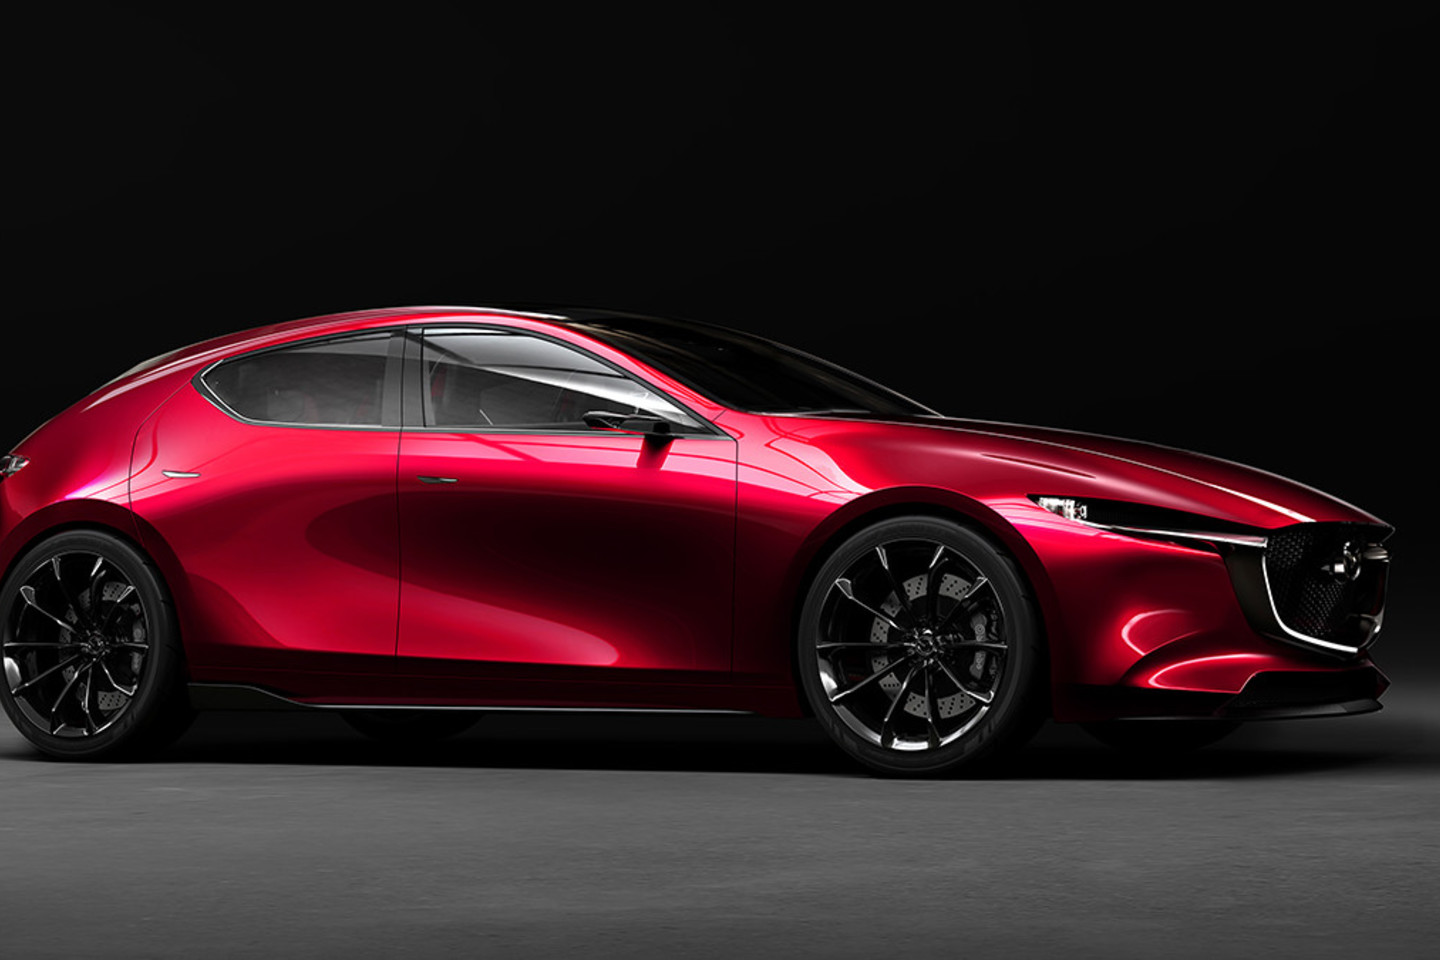 Tokijo automobilių parodoje pristatytas „Mazda Kai Concept“ hečbekas.<br>Gamintojo nuotr.